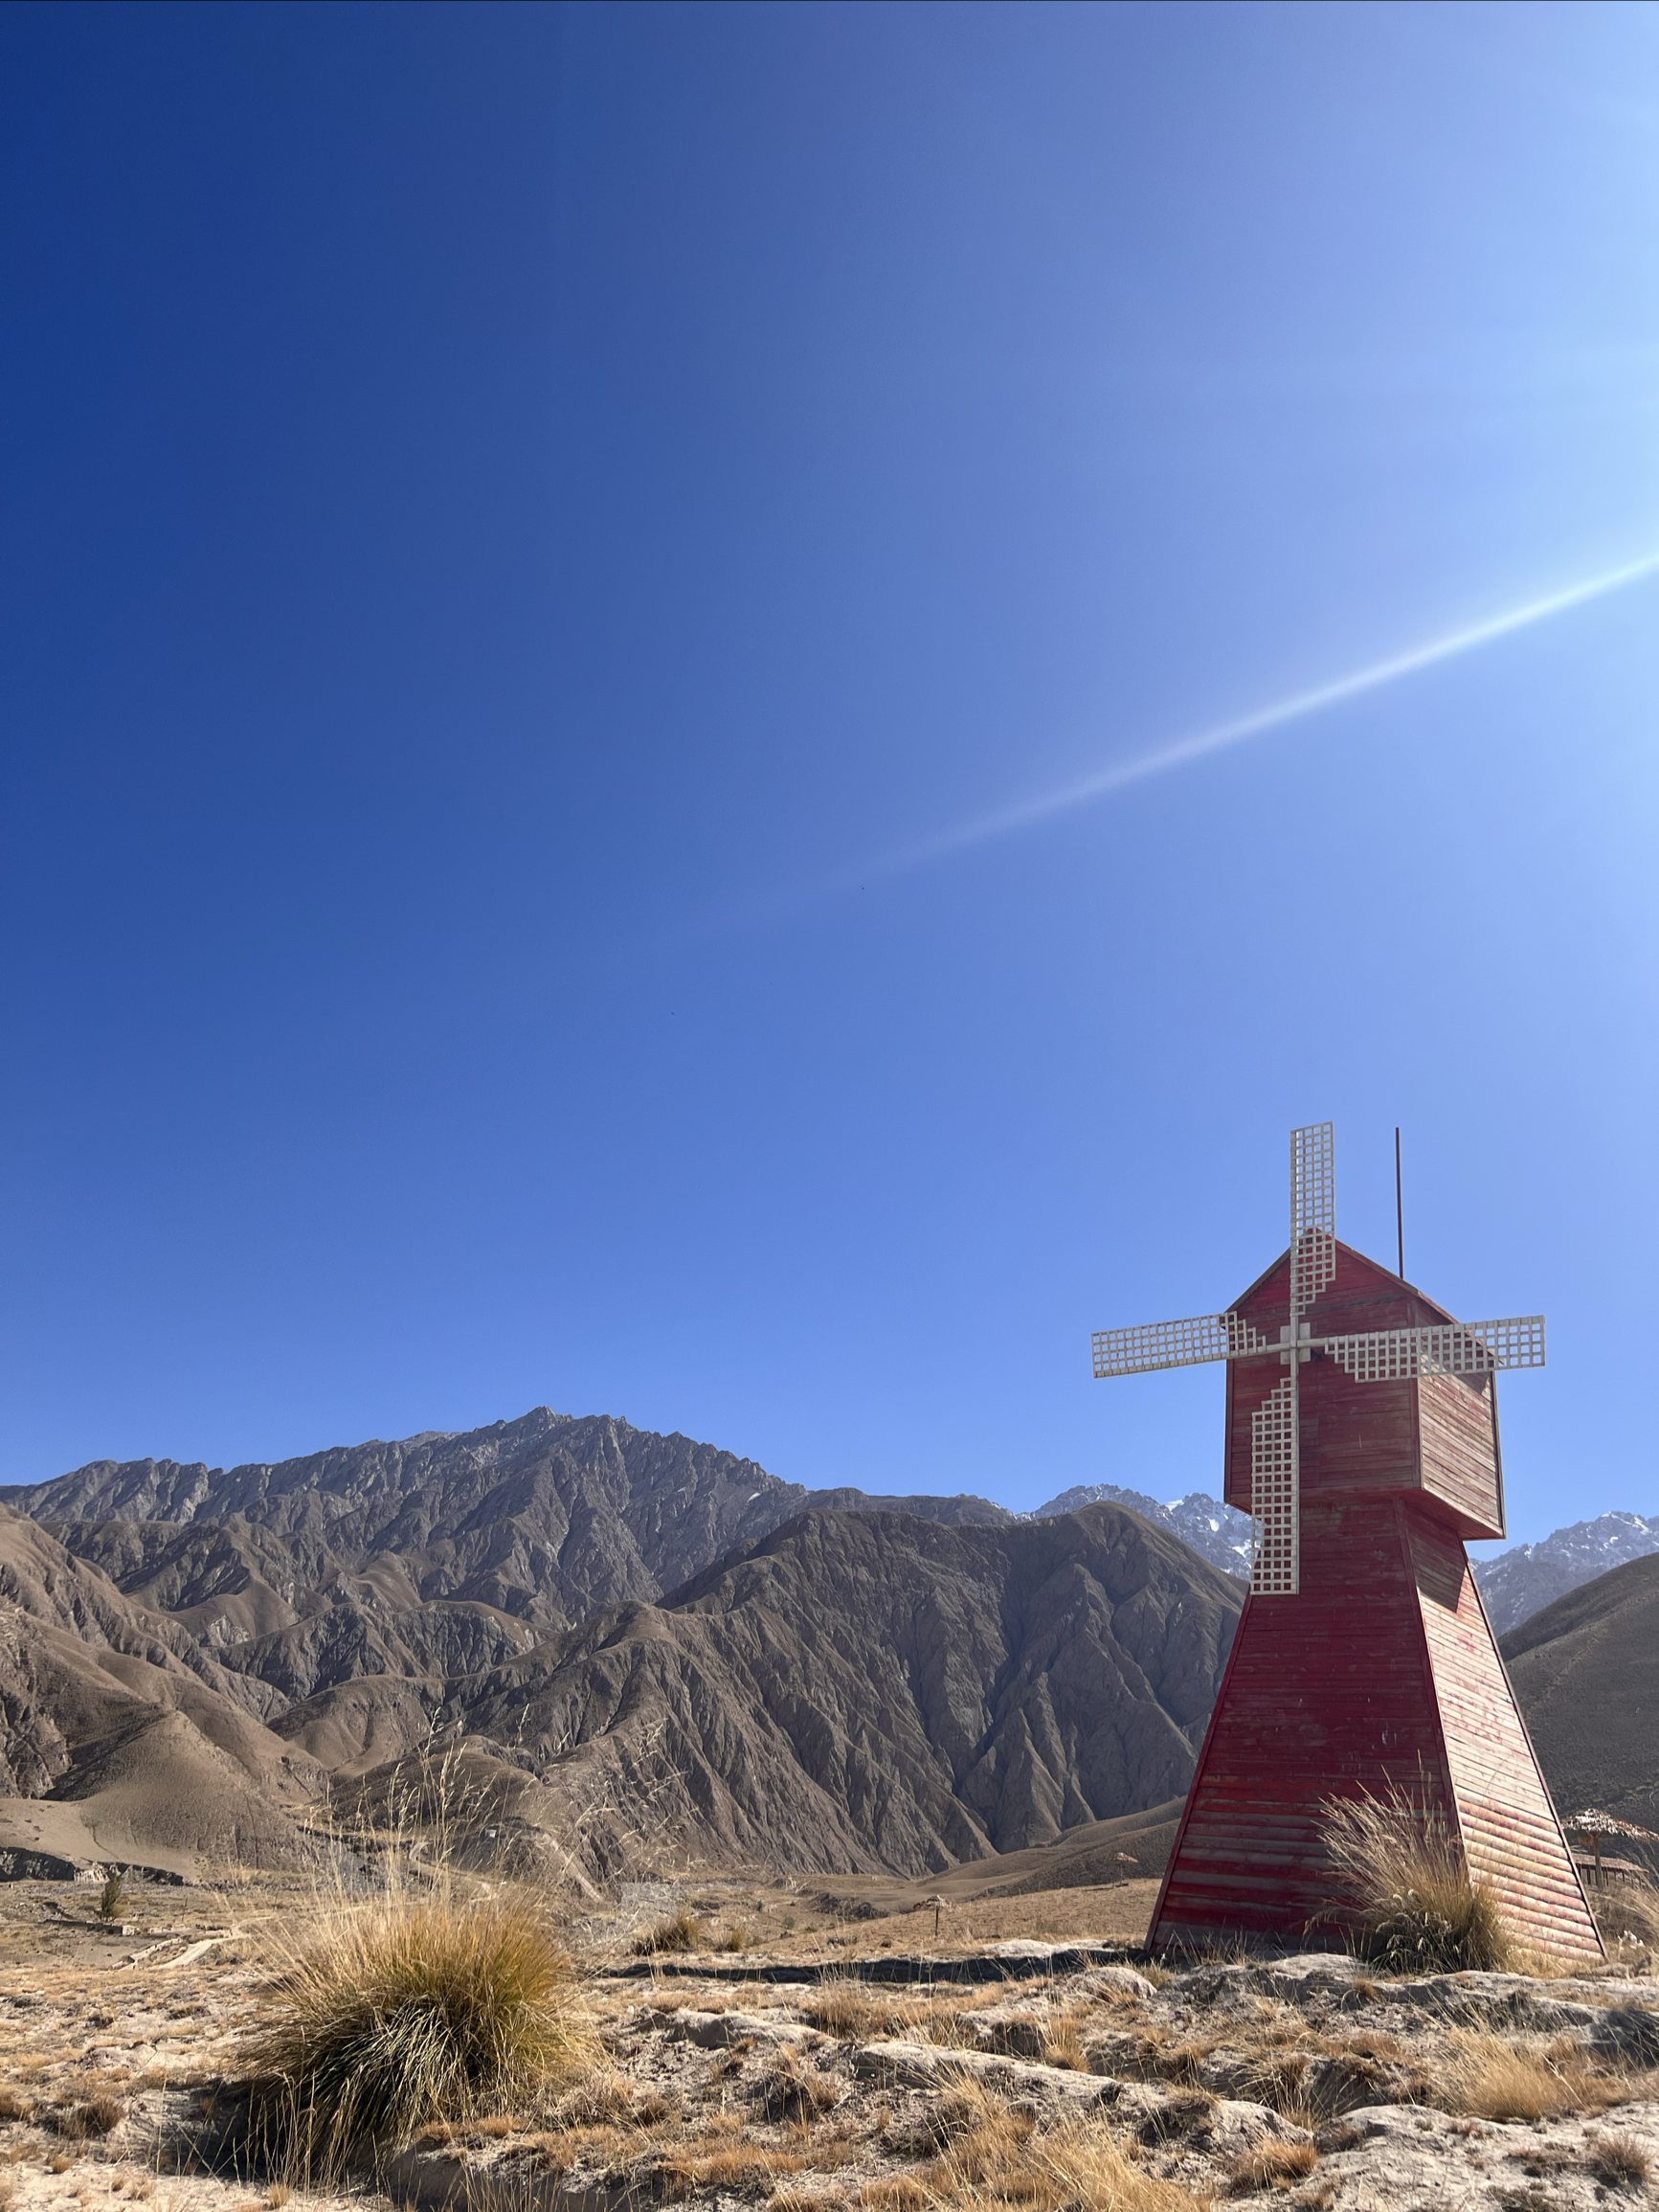 新疆万分之一的美 #深入新疆无人区探索千百万年 #新疆旅游推荐 #出境游好地方